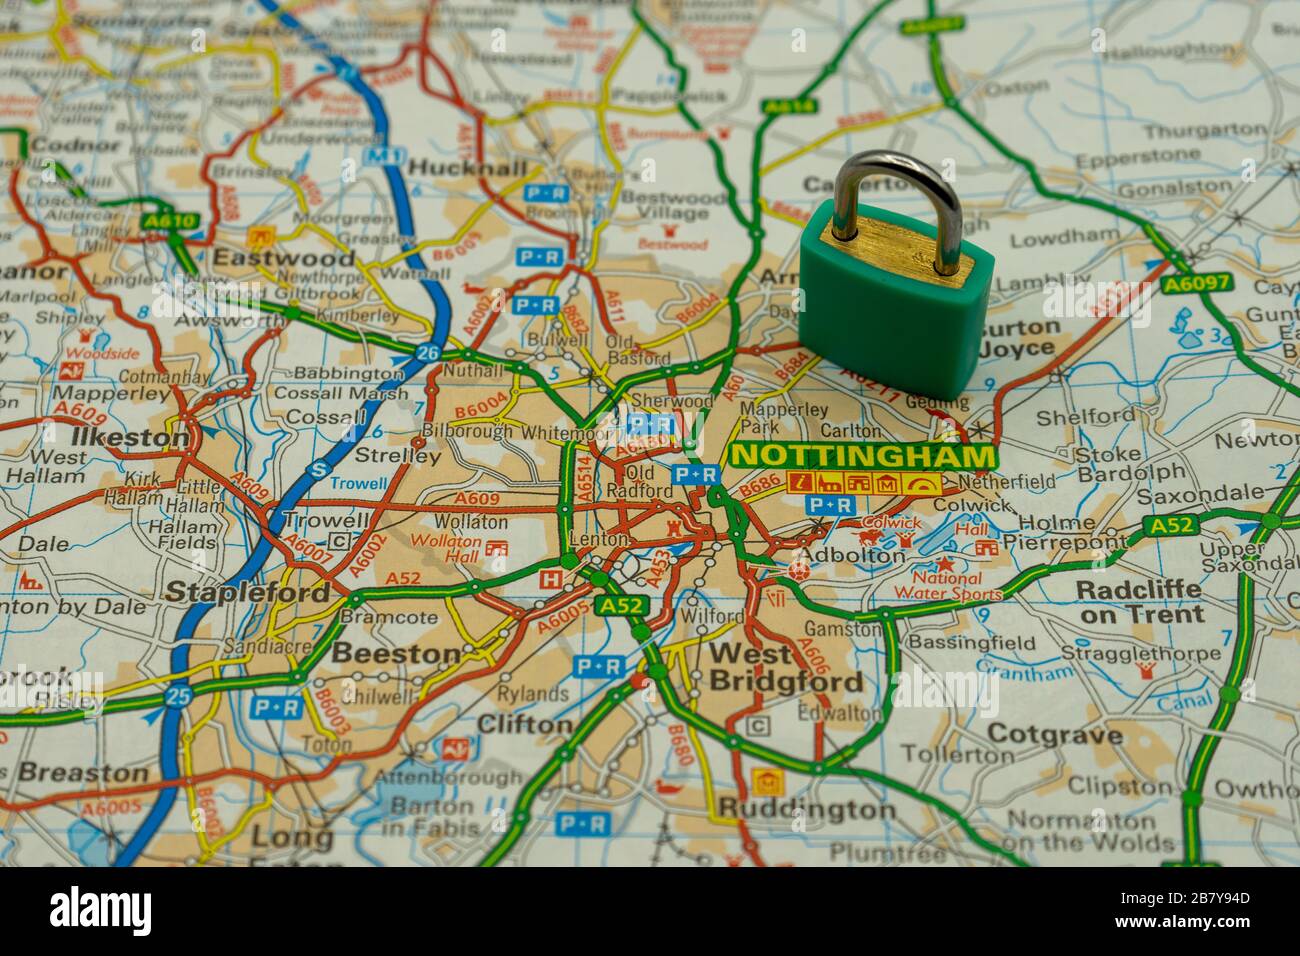 Nottingham montré sur une carte routière ou géographique avec un cadenas sur le dessus pour représenter une ville en lock-down Banque D'Images